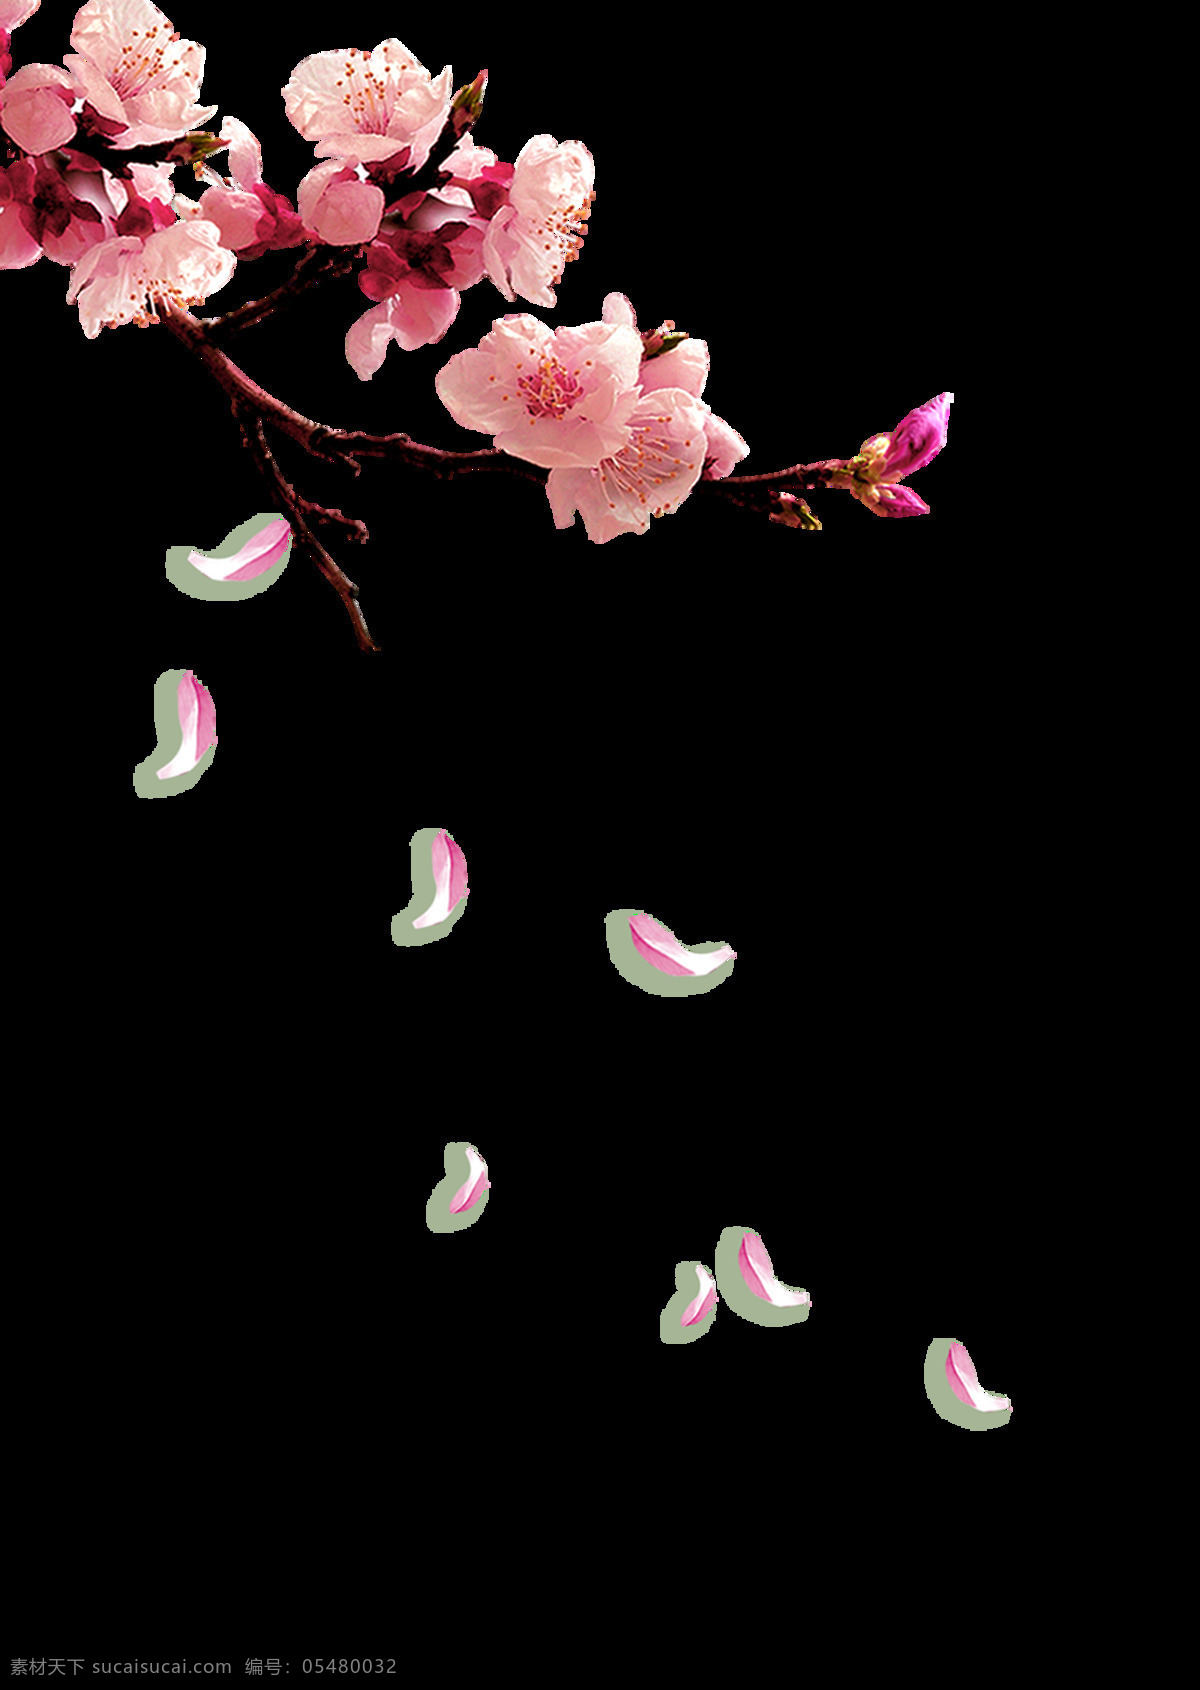 小 清新 梅花 小清新梅花 一枝梅 花朵 树枝 中国风 折纸 小清新 梅花照片 落梅 花瓣